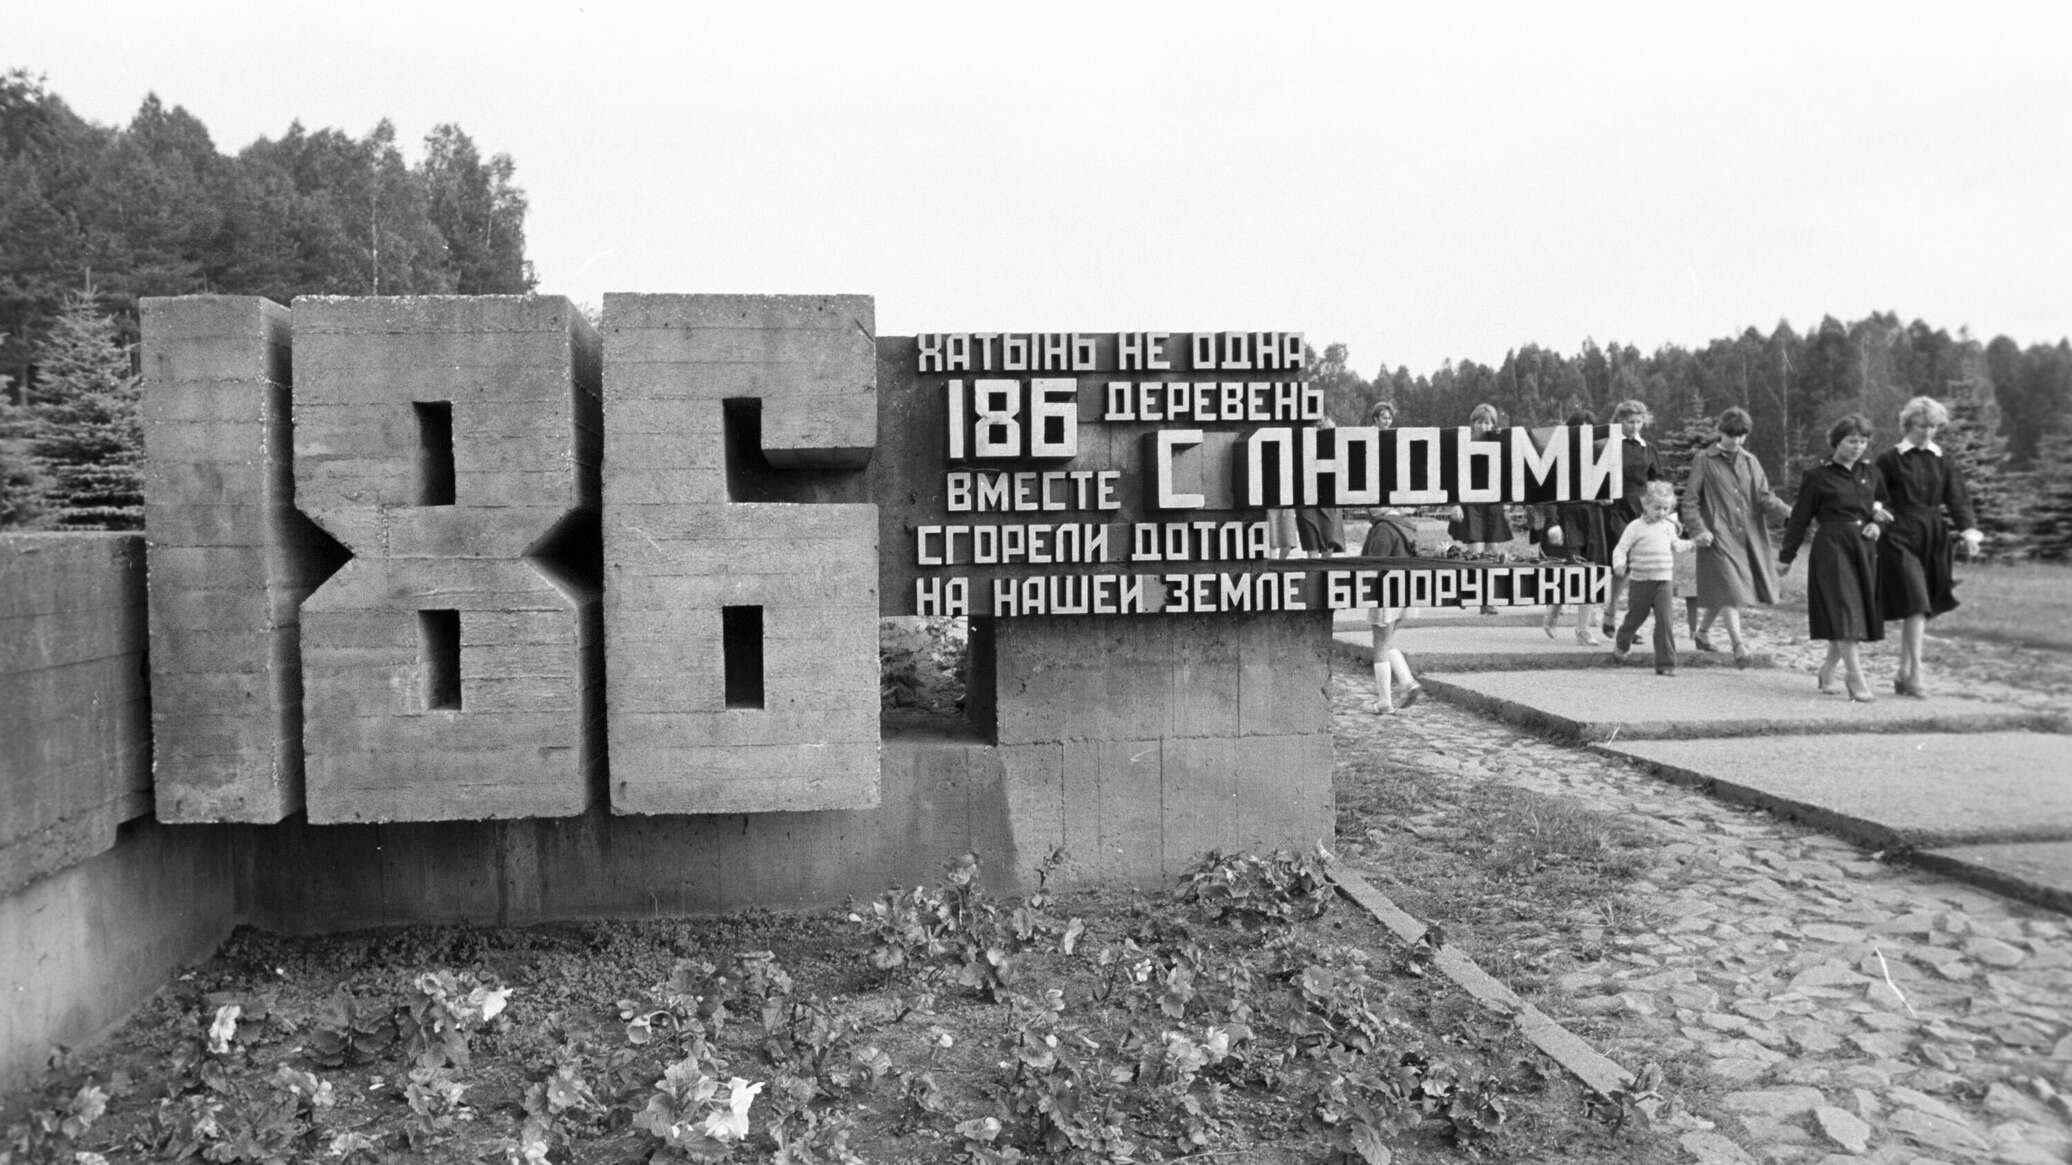 Photo of 80 de ani de la tragedia din Hatînul belarus